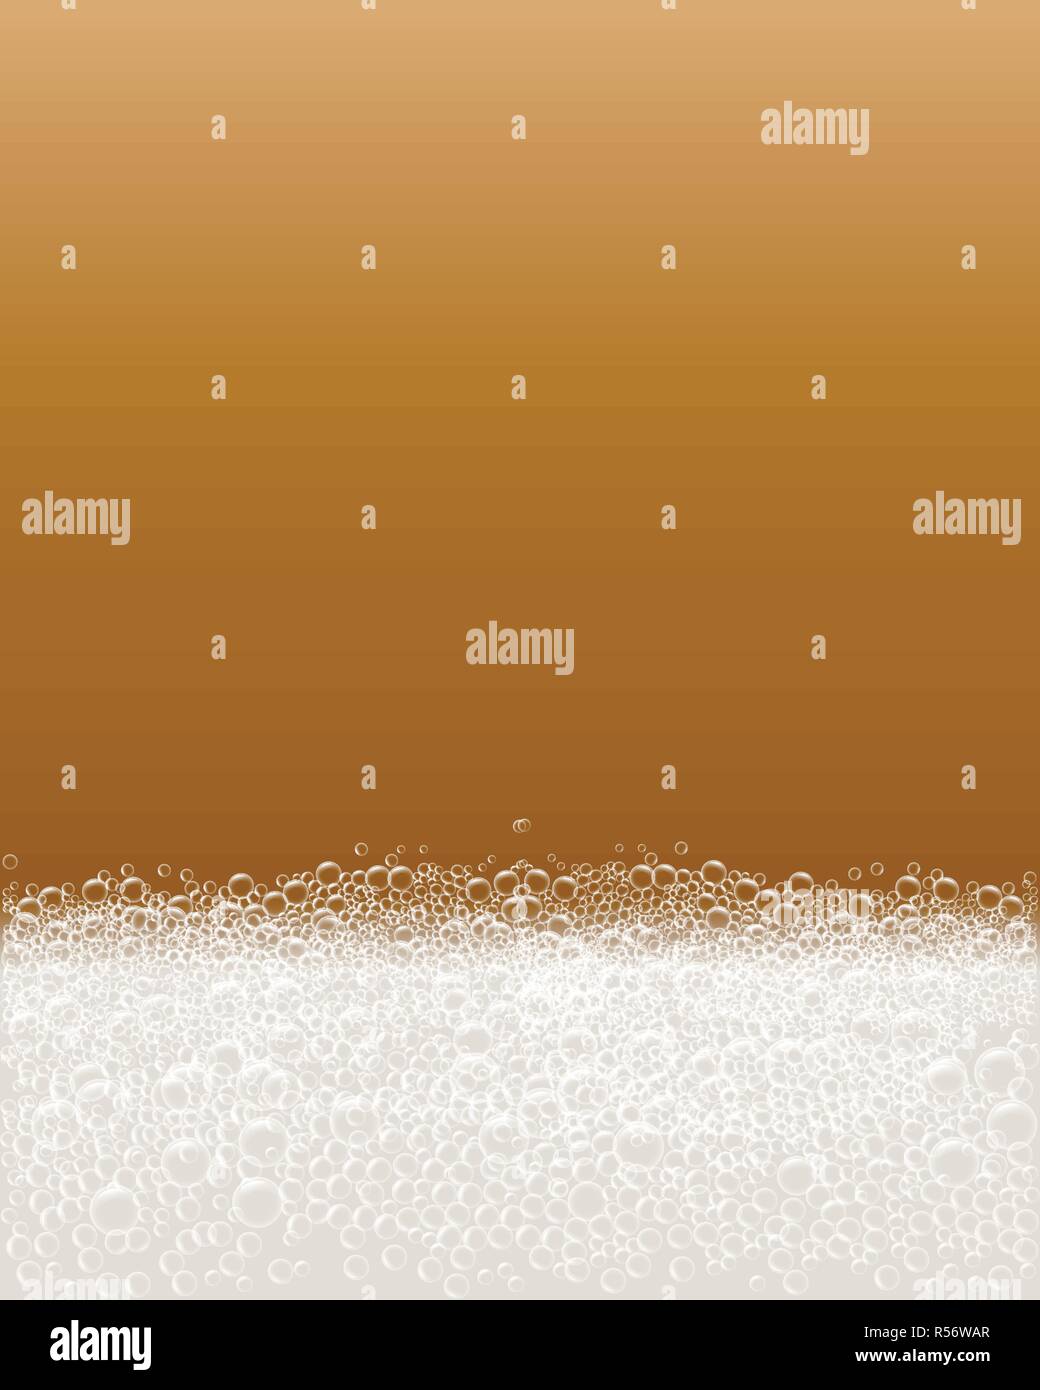 Soap bubble foam concept background. Realistic illustration of soap bubble foam vector concept background for web design Stock Vector